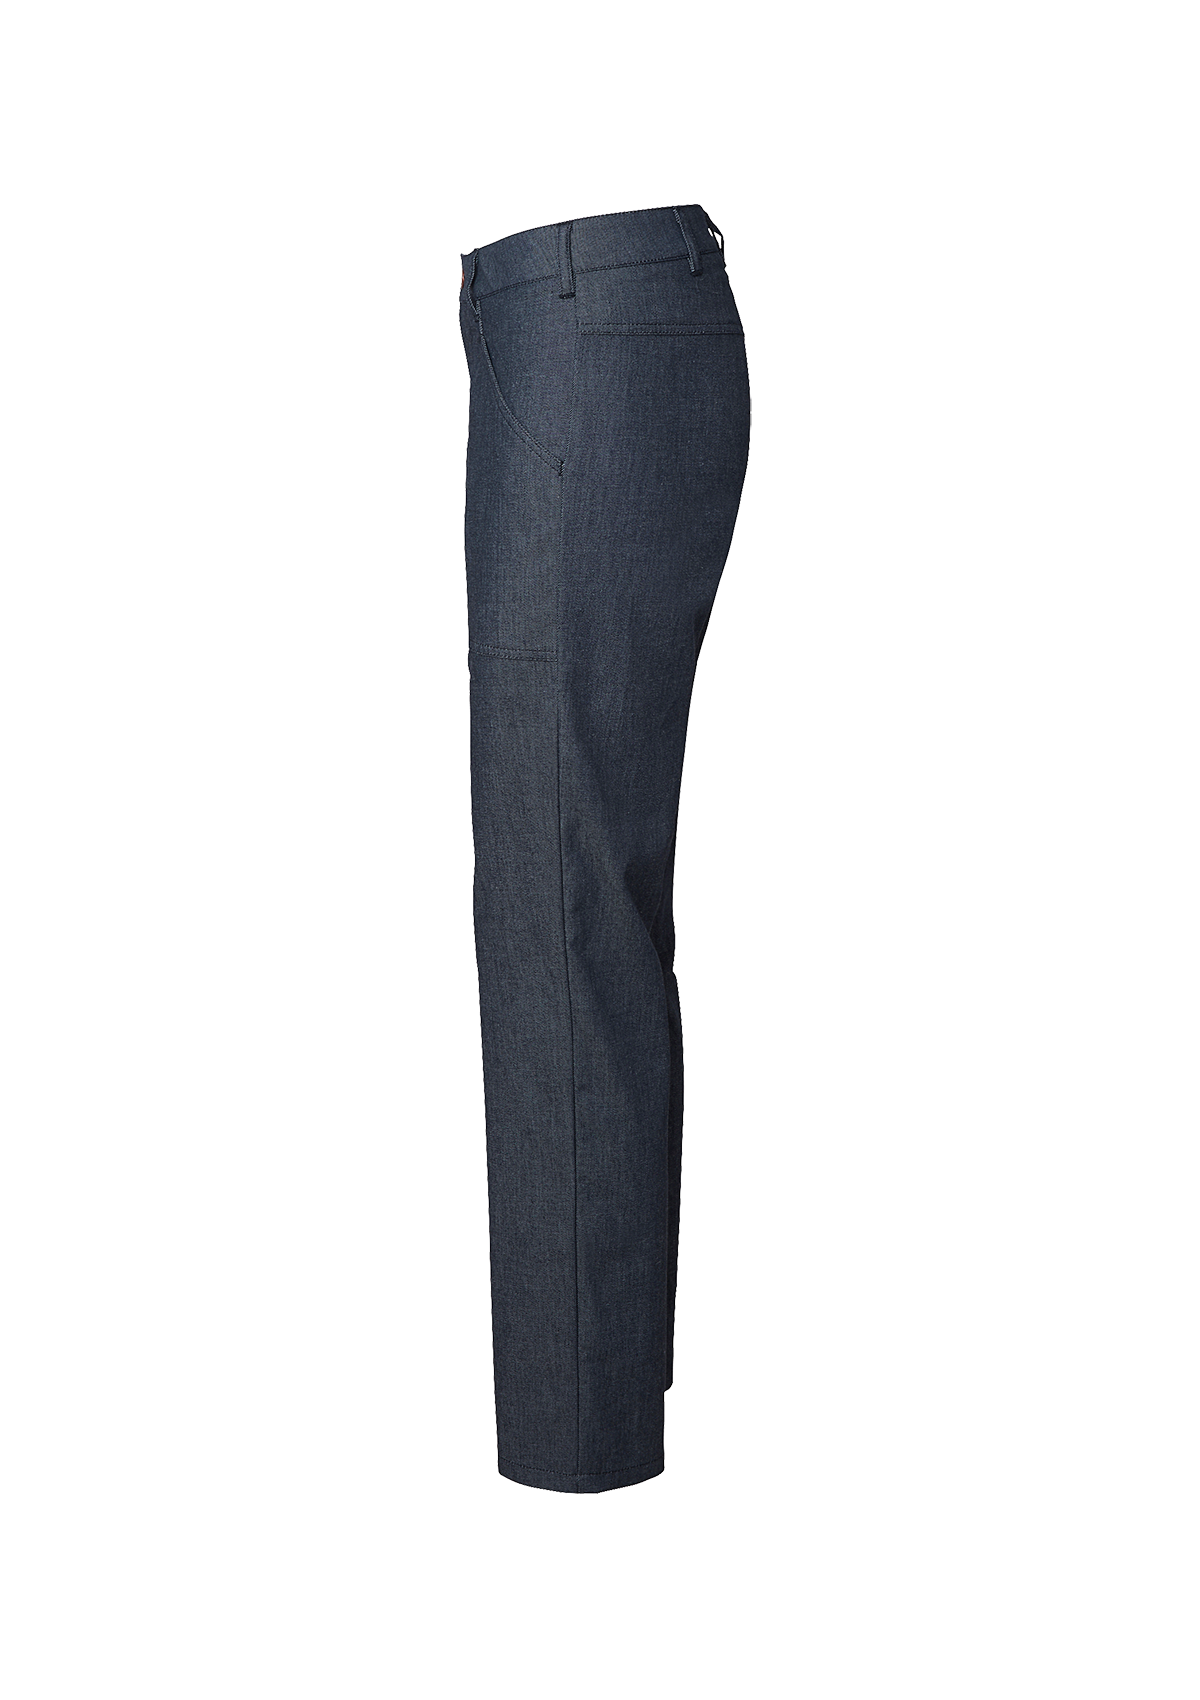 Women's stretch trousers in Denim look-a-like. Segers | Cookniche